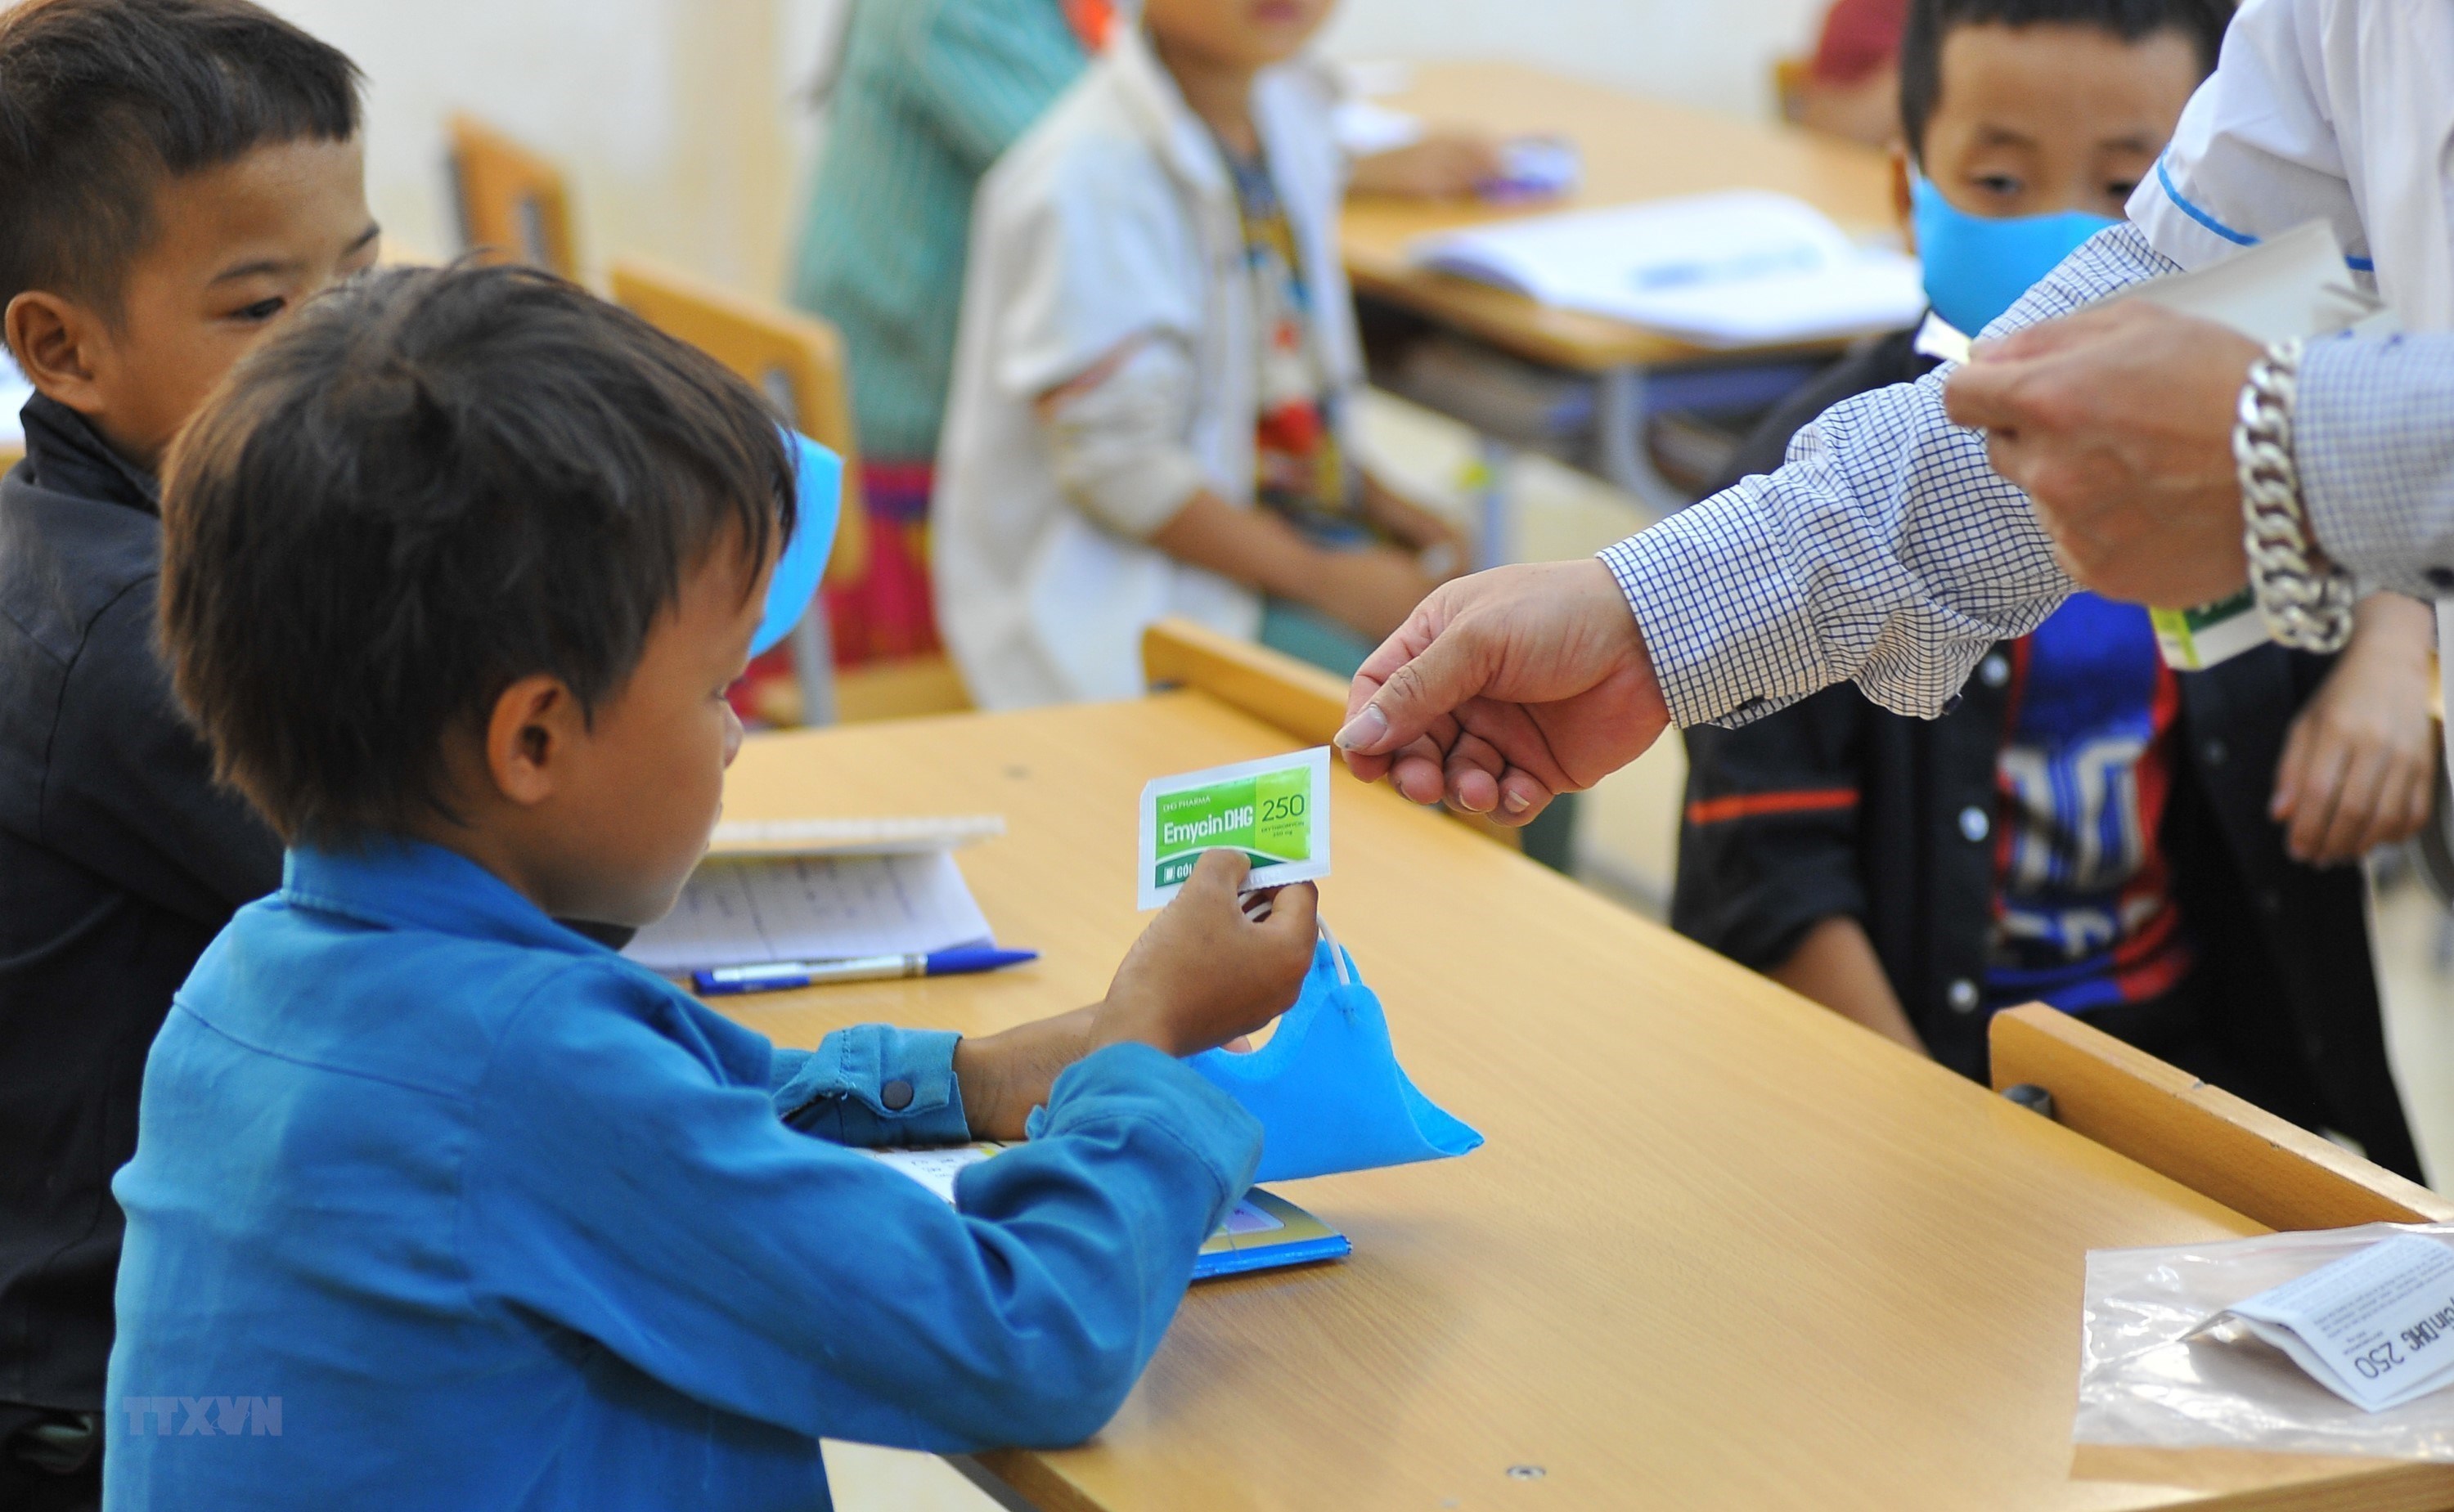 Điện Biên mở chiến dịch tiêm chủng vaccine phòng bệnh bạch hầu